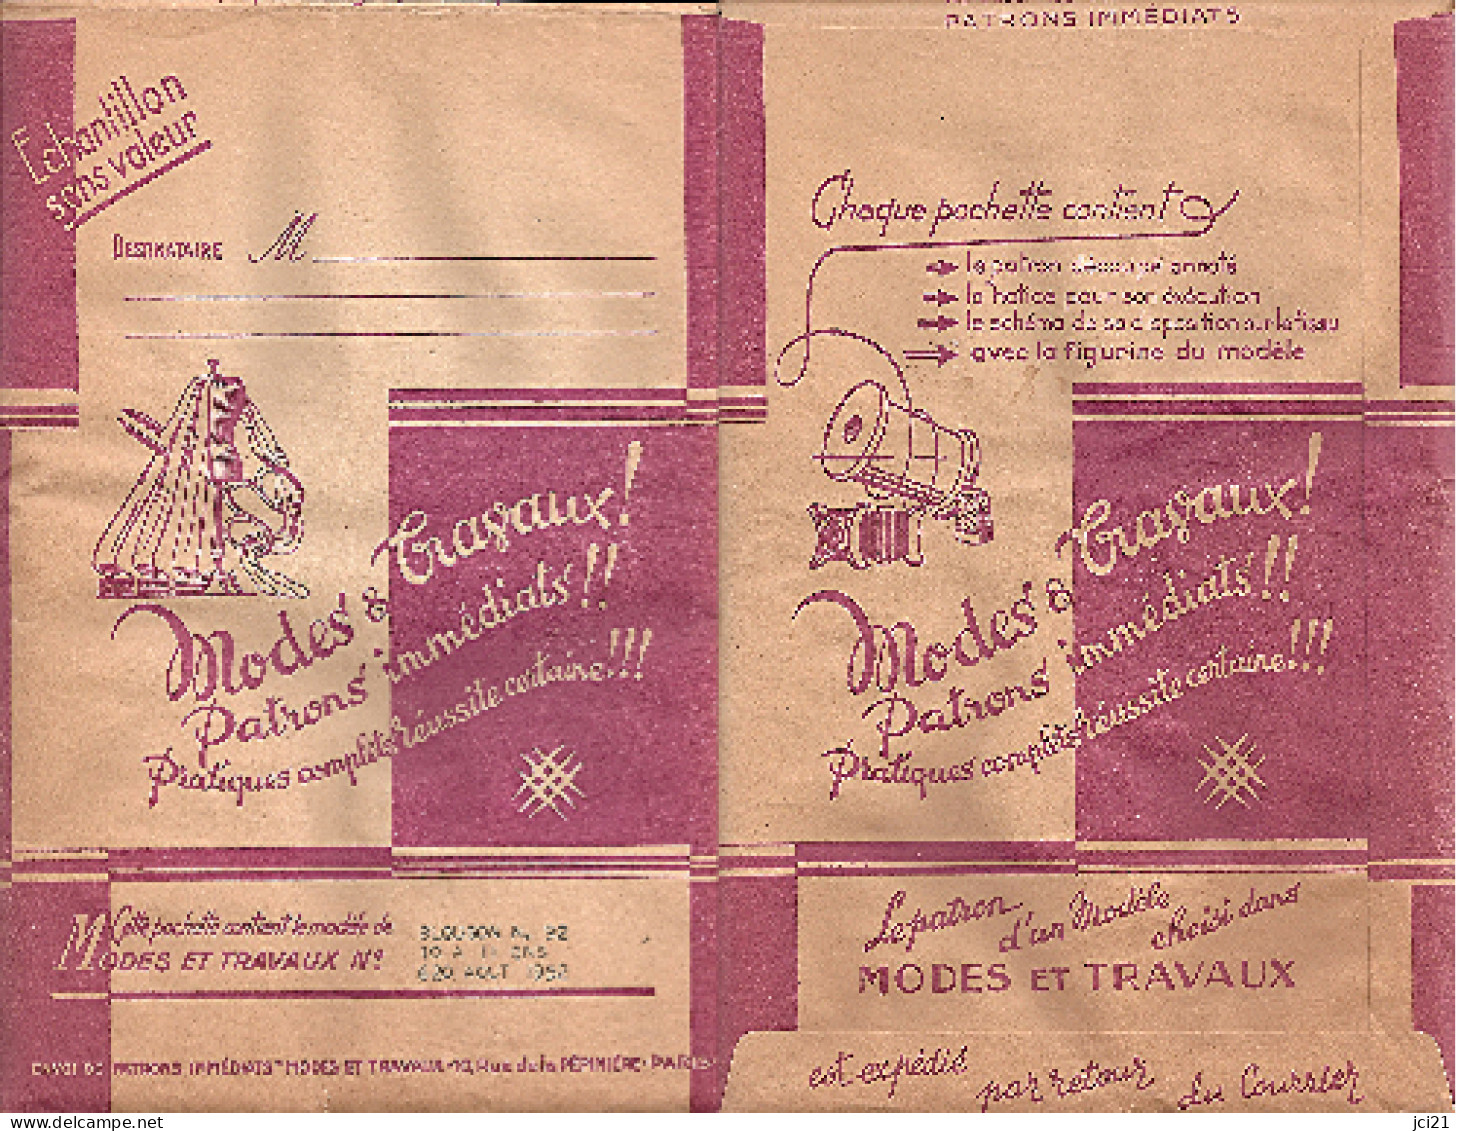 Patron MODE & TRAVAUX D'août 1952 "Blouson" Pour Enfant De 10 à 11 Ans (92)_L35 - Patterns